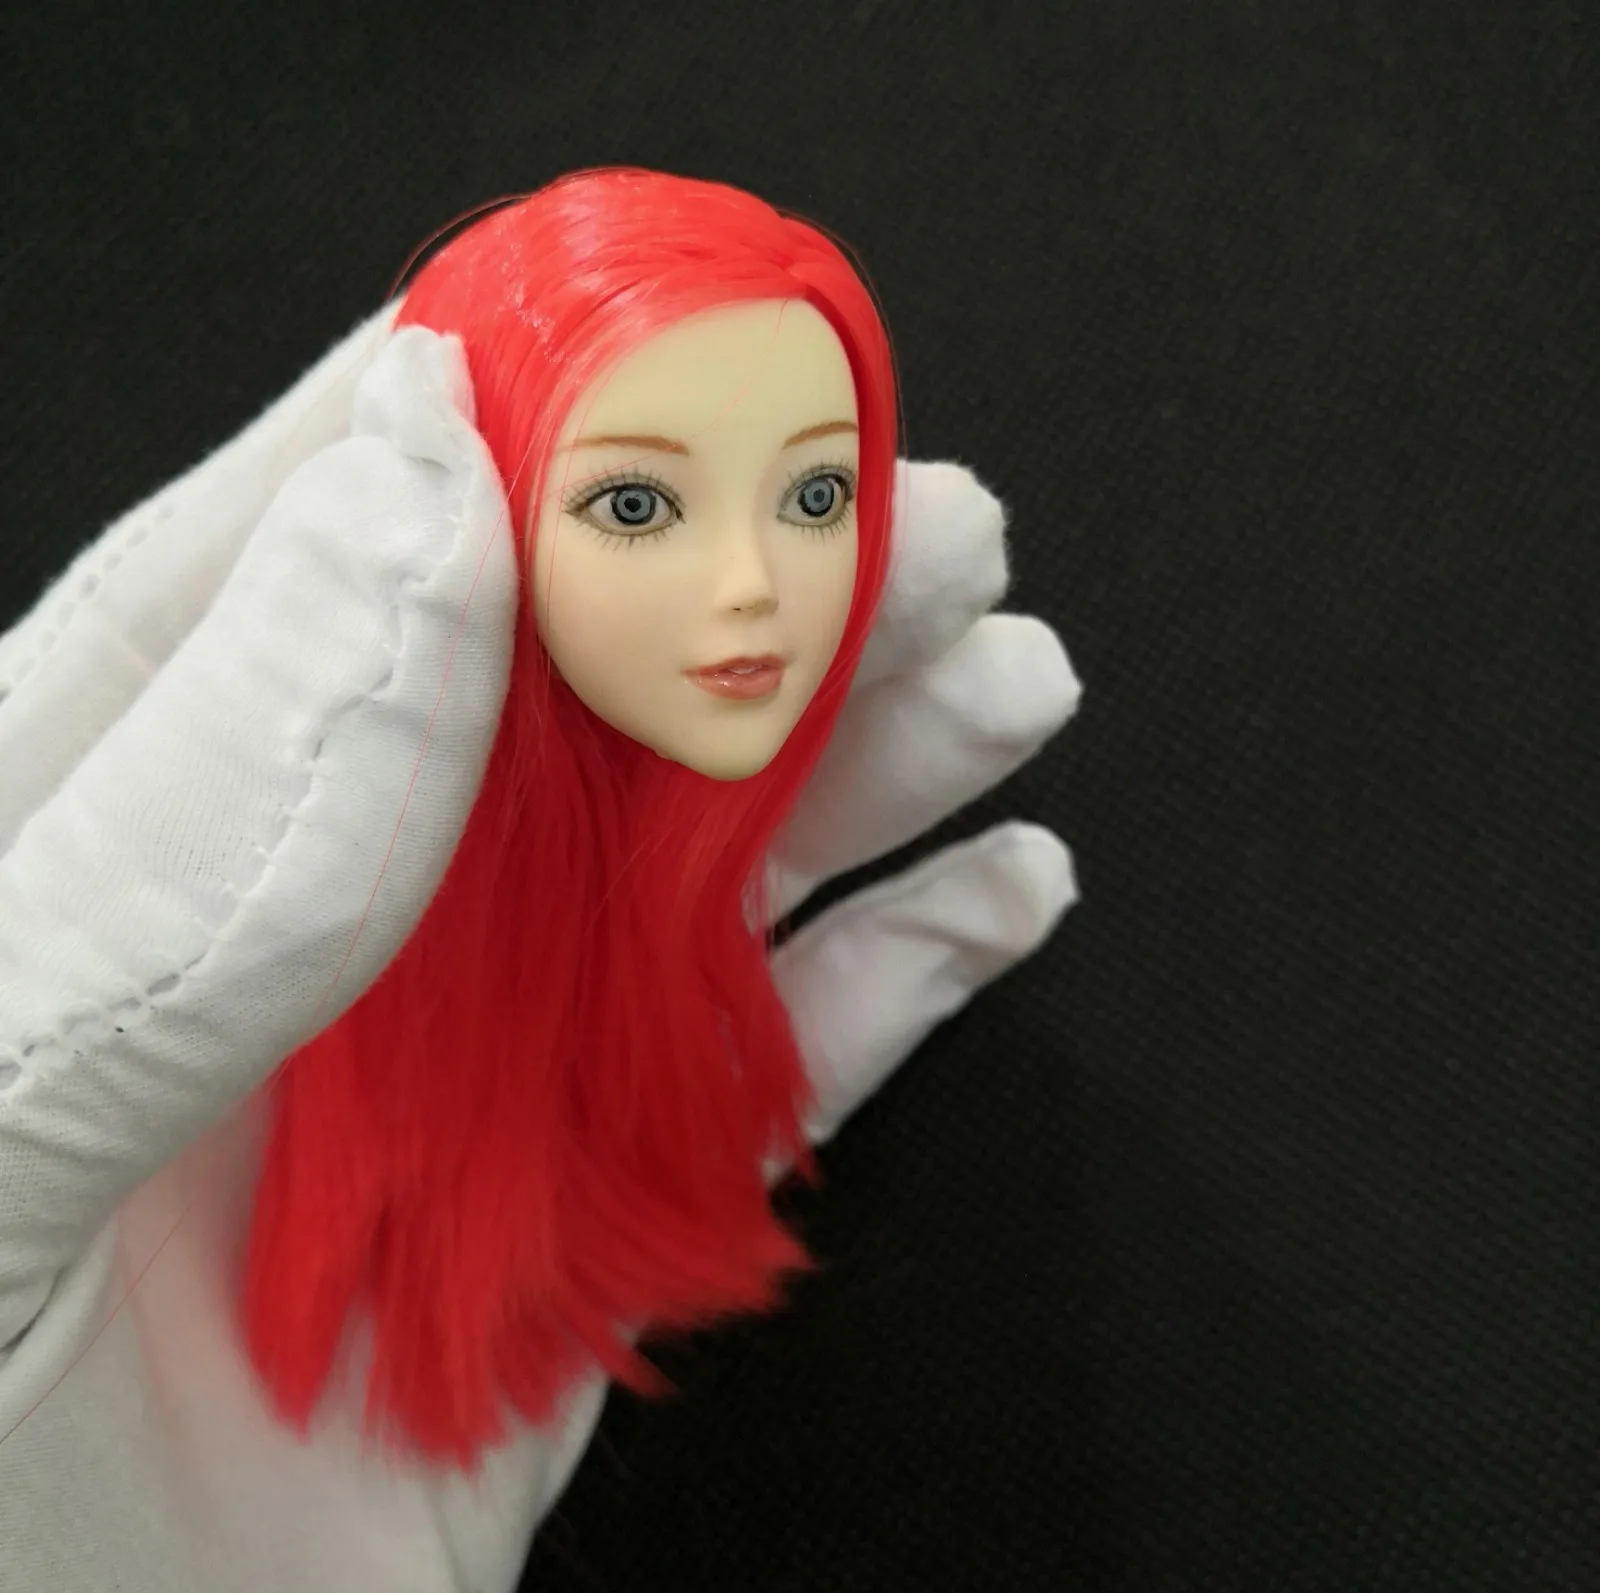 

1/6 год, голова девочки из мультфильма, модель головы юны с красными и черными волосами для 12 дюймов, тела экшн-фигурок